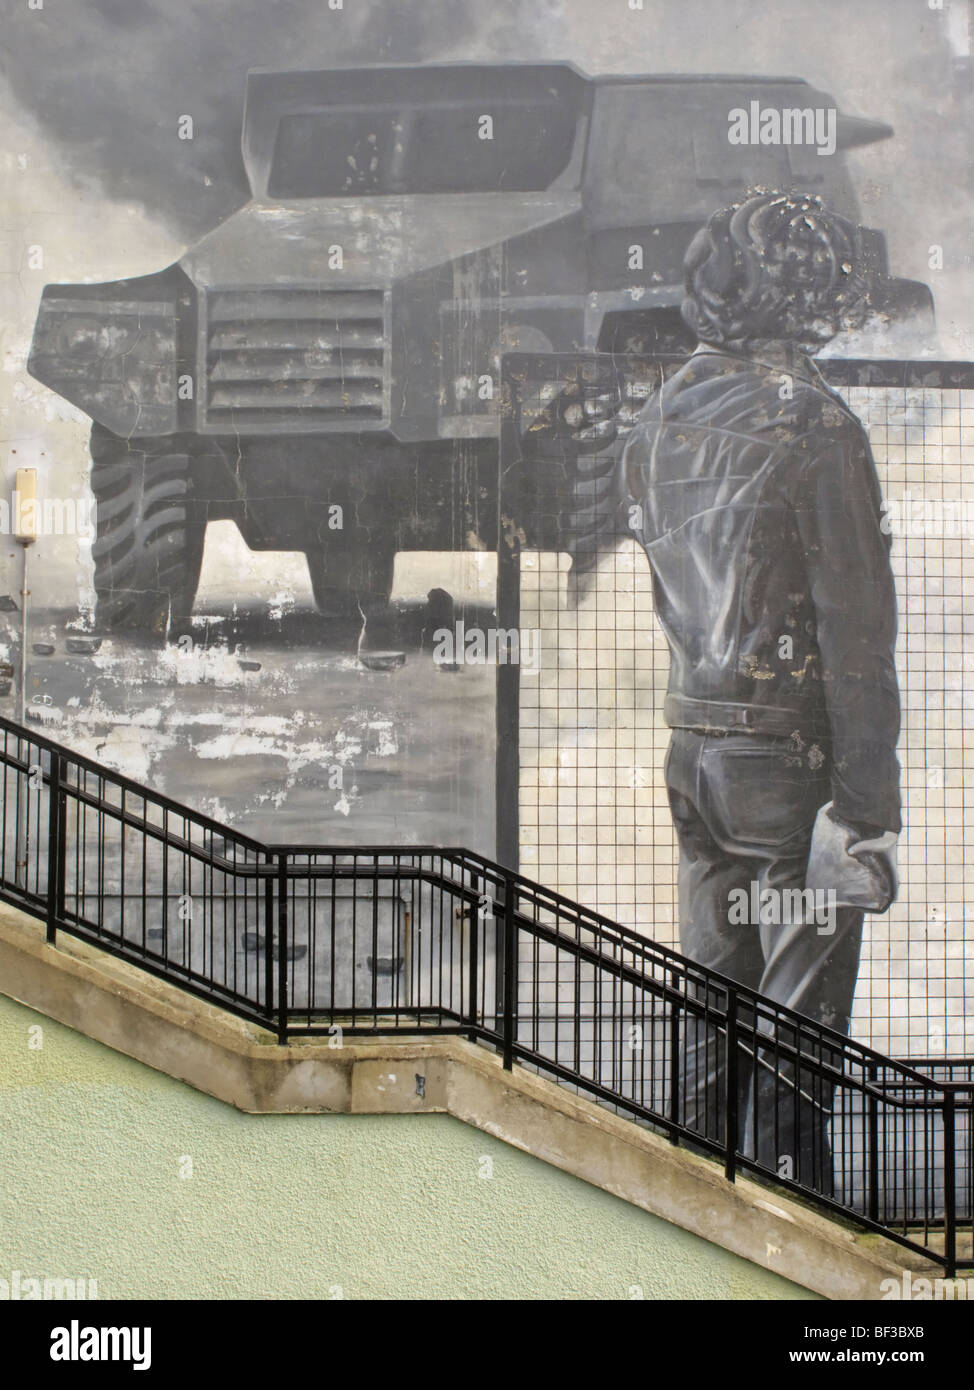 Peint peinture murale représentant une scène du 'problème' dans le quartier de Bogside Londonderry (Irlande du Nord) Banque D'Images